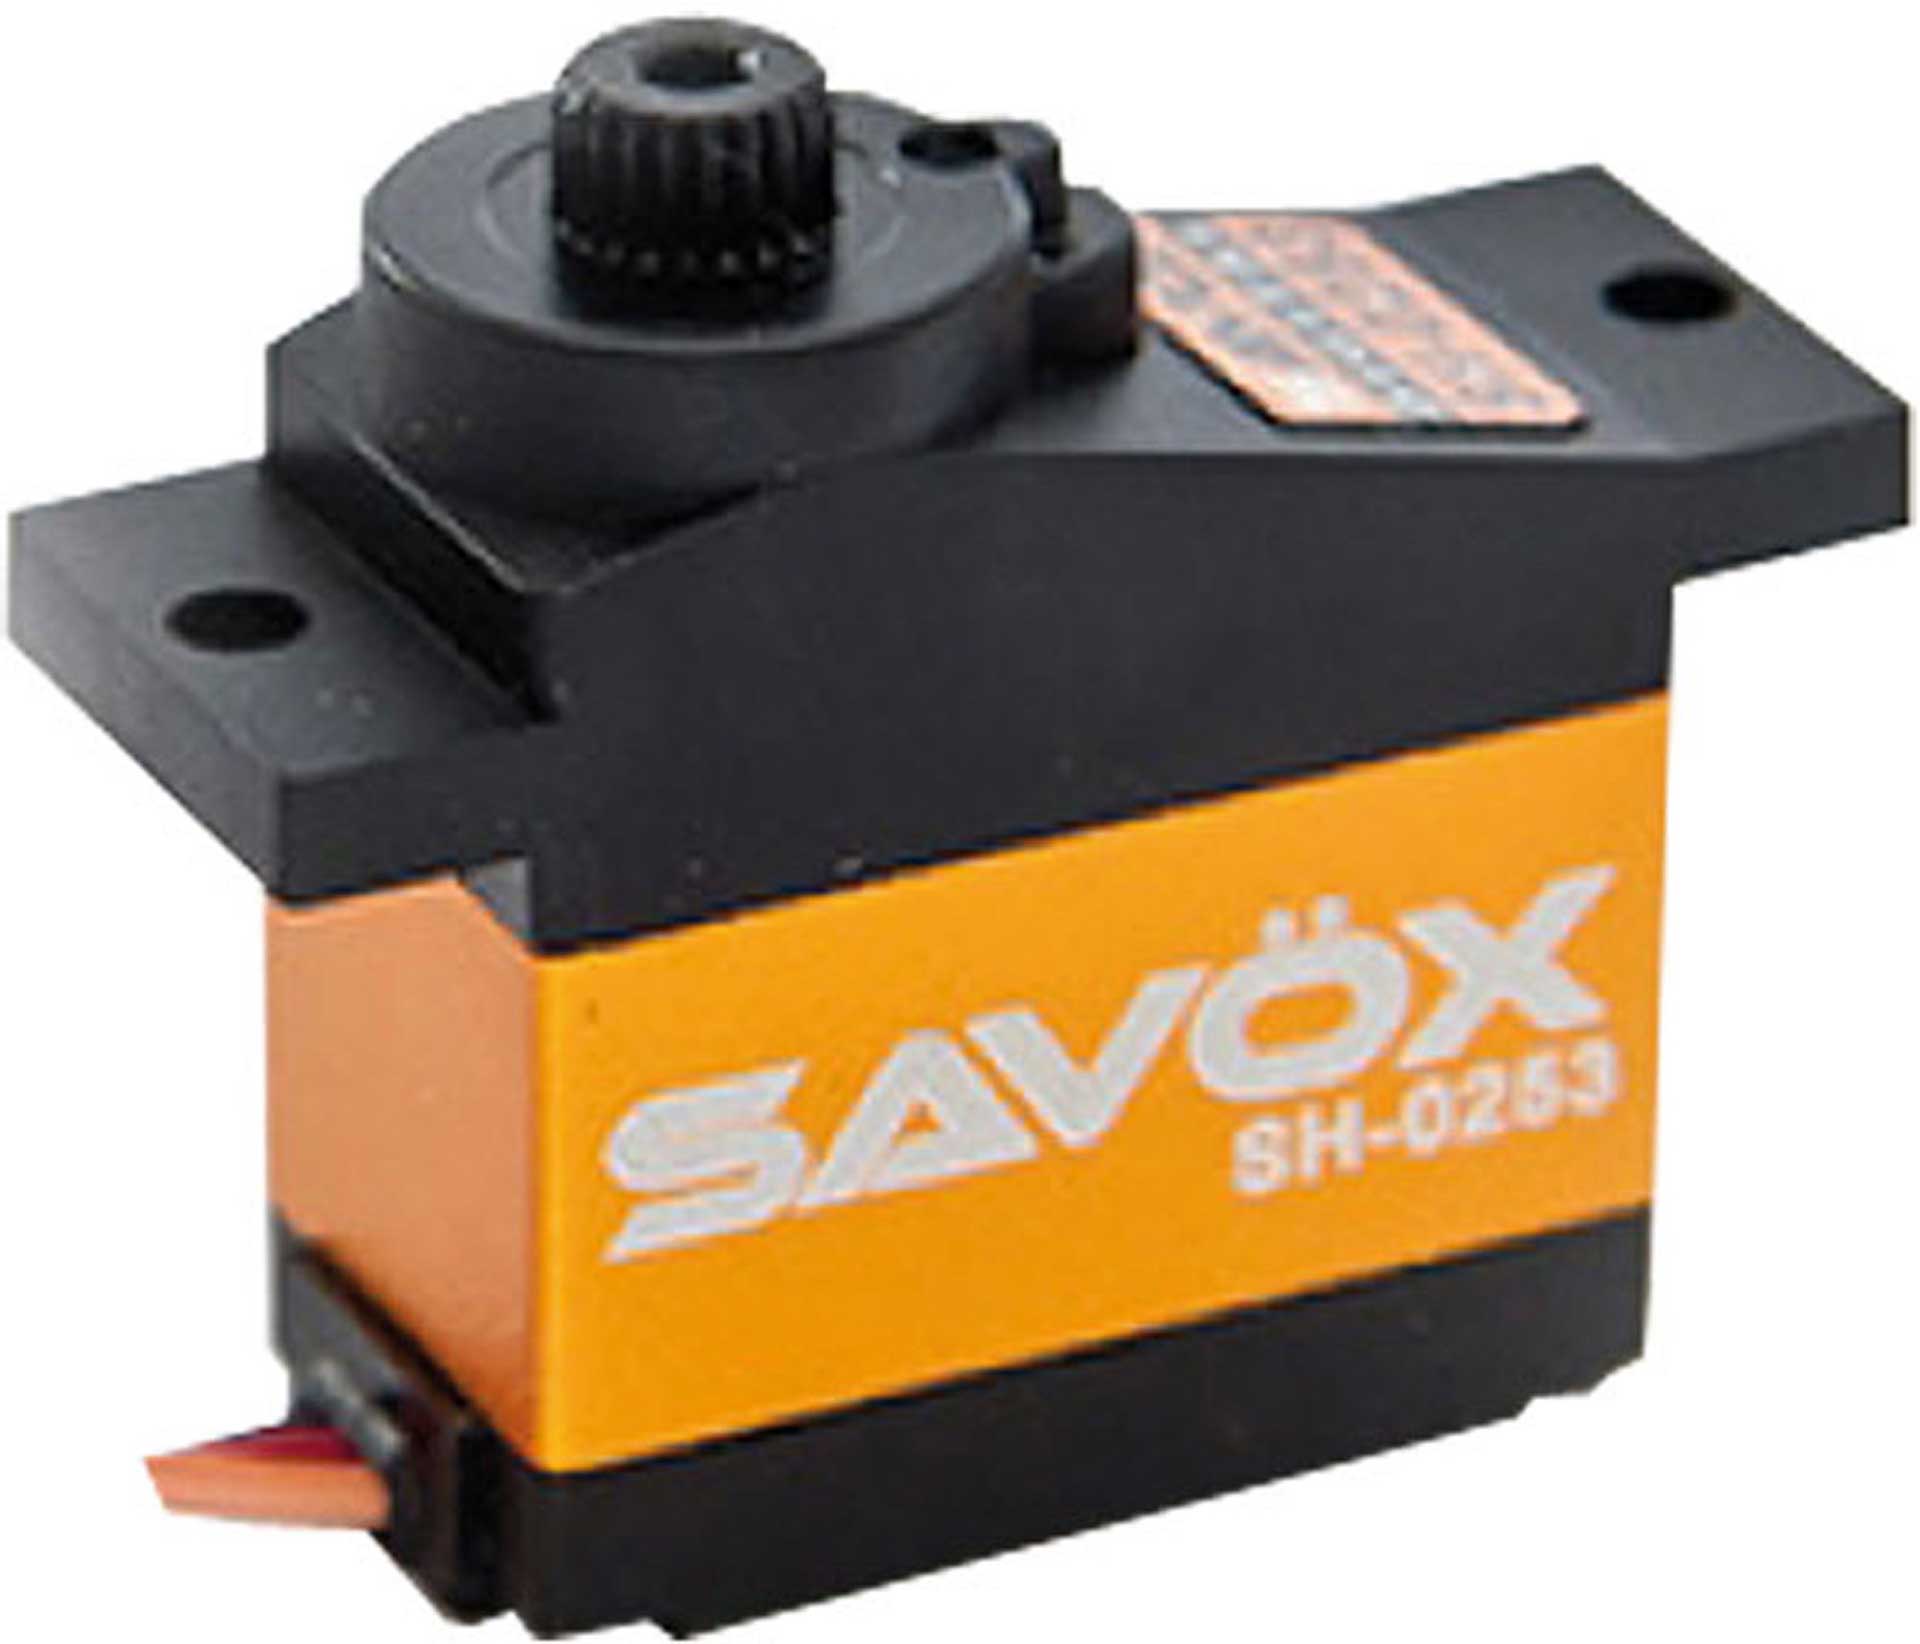 SAVÖX SH-0253 (6V/2,2KG/0,09s) DIGITAL SERVO